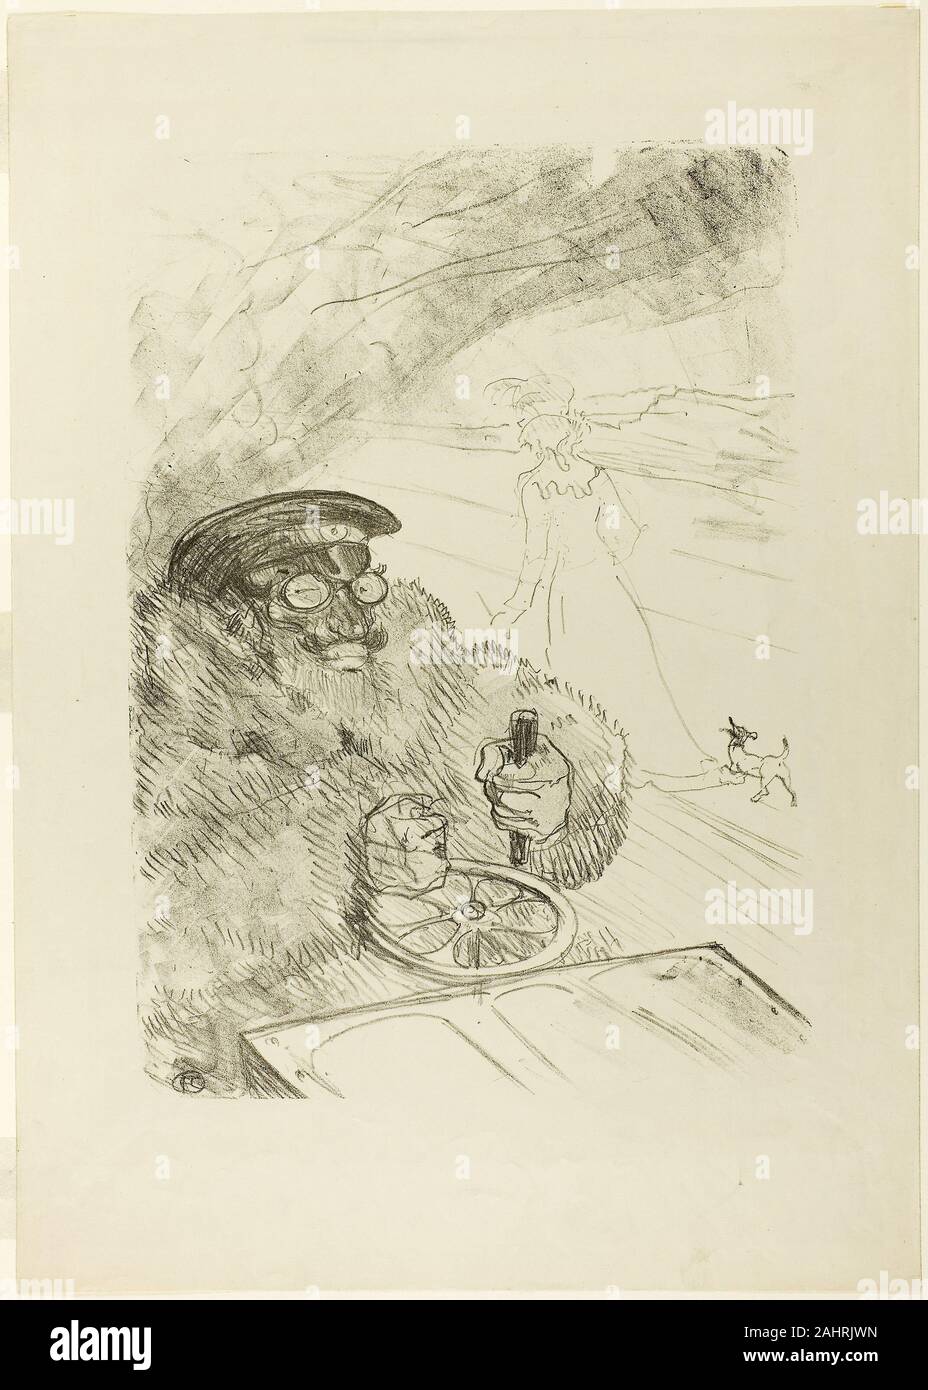 Henri de Toulouse-Lautrec. Der Autofahrer. 1896. Frankreich. Auf Creme webte Papier Lithographie Stockfoto